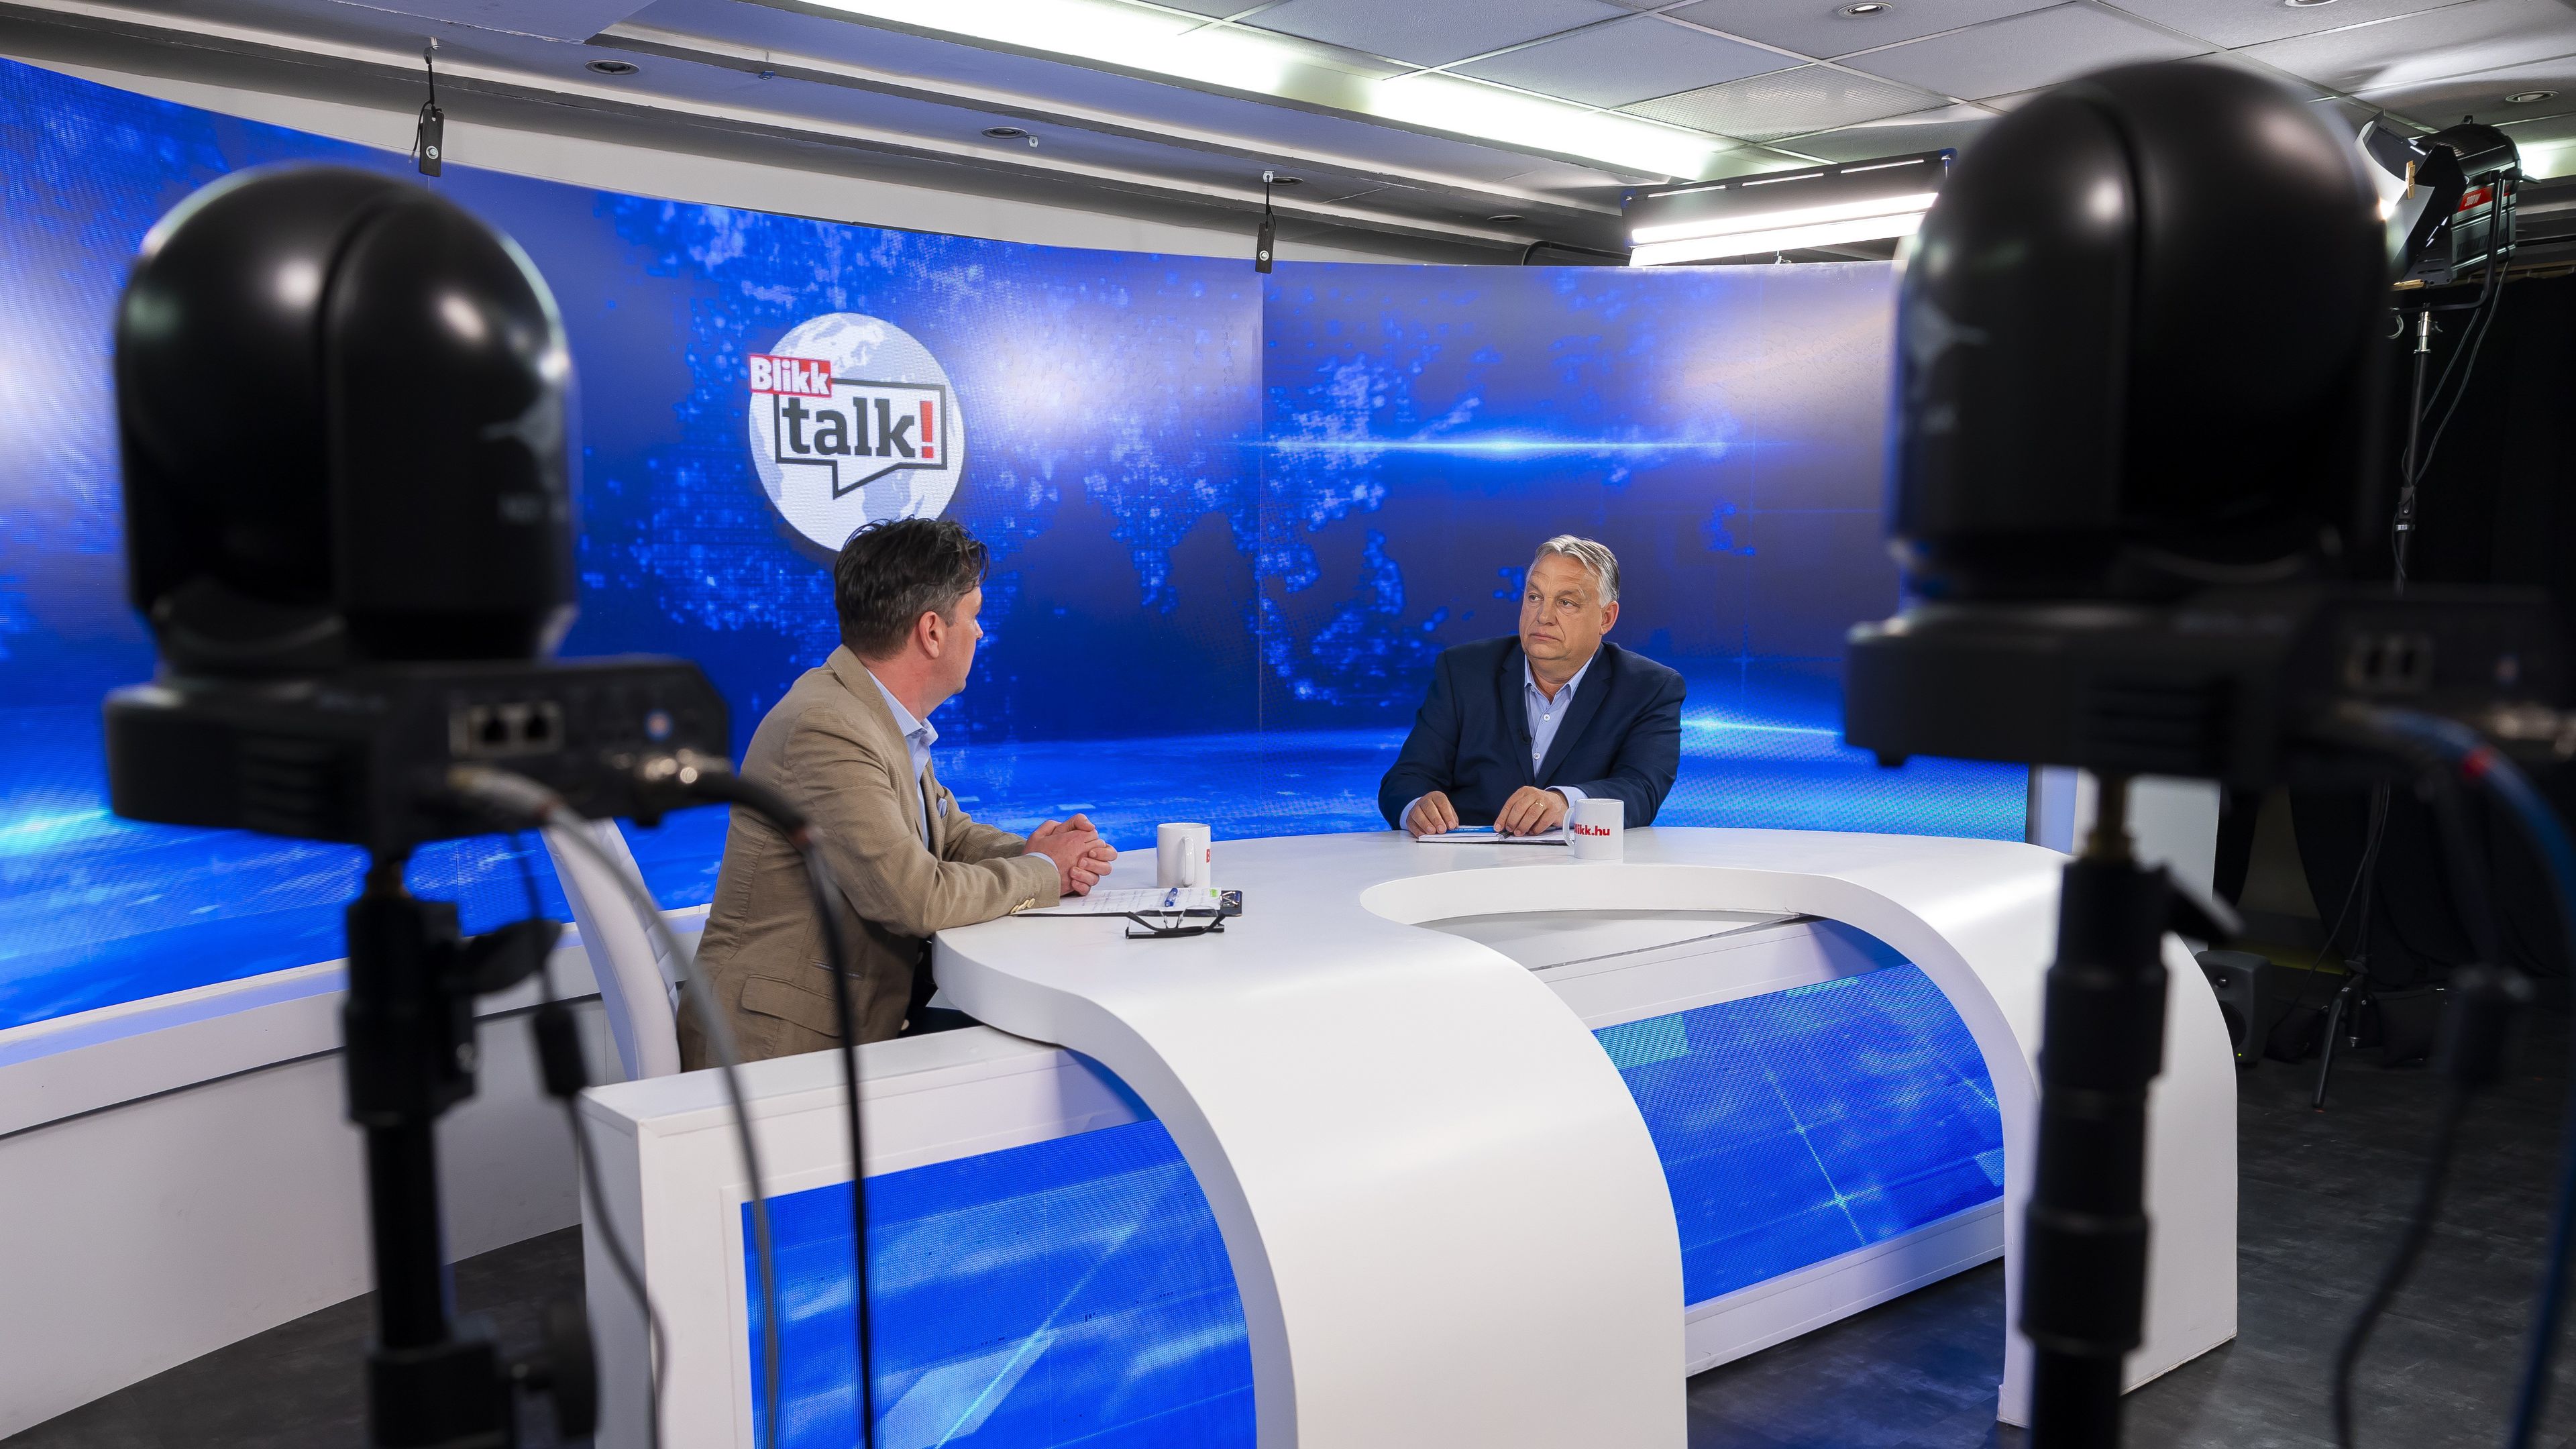 Hiába próbált a házigazda konkrét eredményeket „kipasszírozni” a miniszterelnökből, Orbán ellenállt (Fotó: Czerkl Gábor)